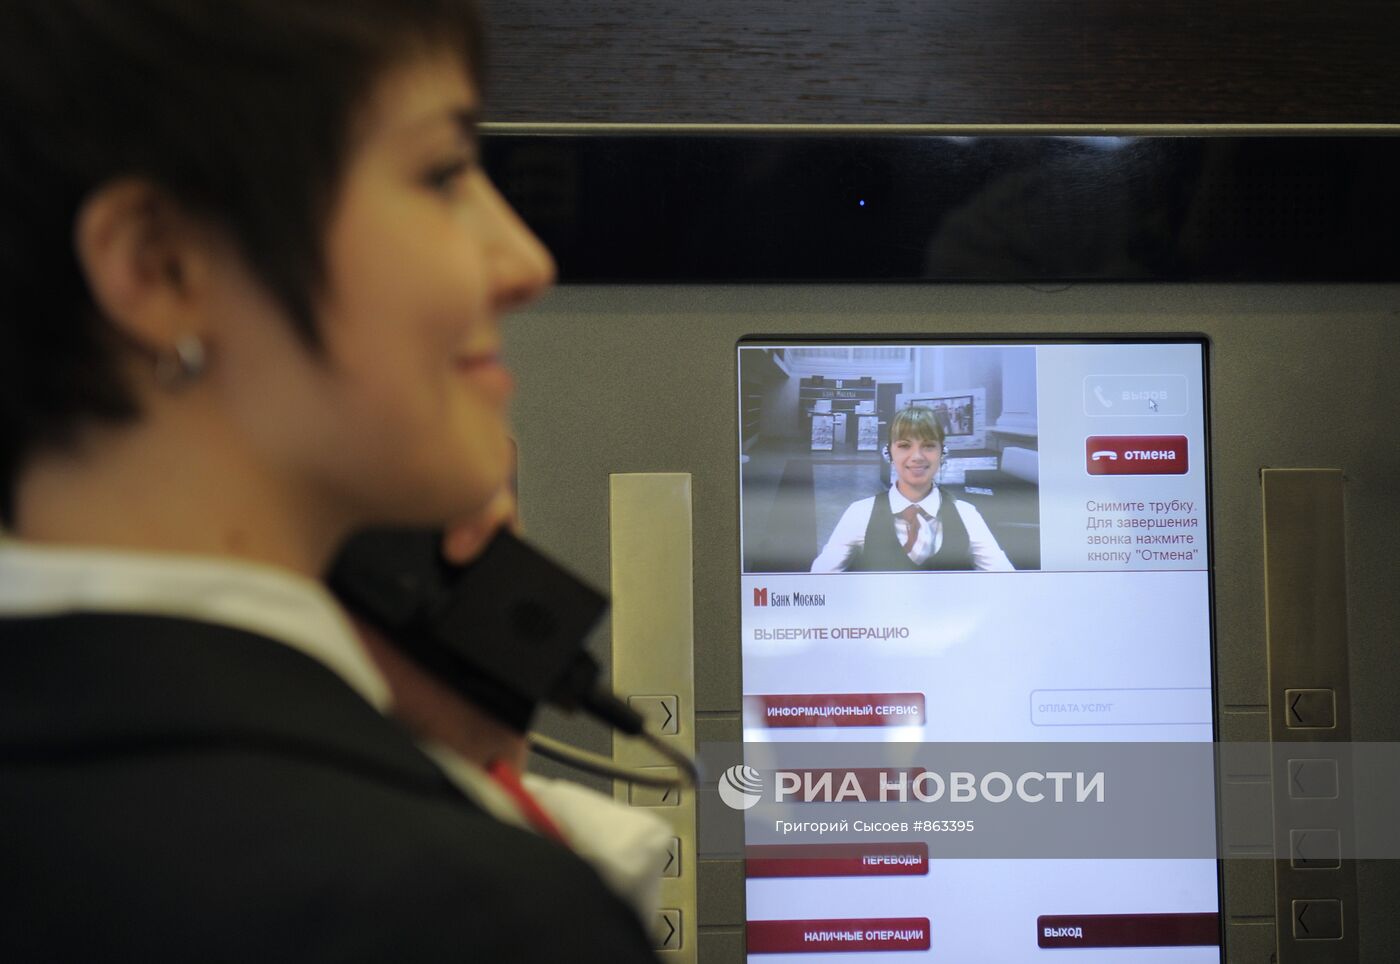 Тест-драйв нового офиса "Банка Москвы" "Digital Office"